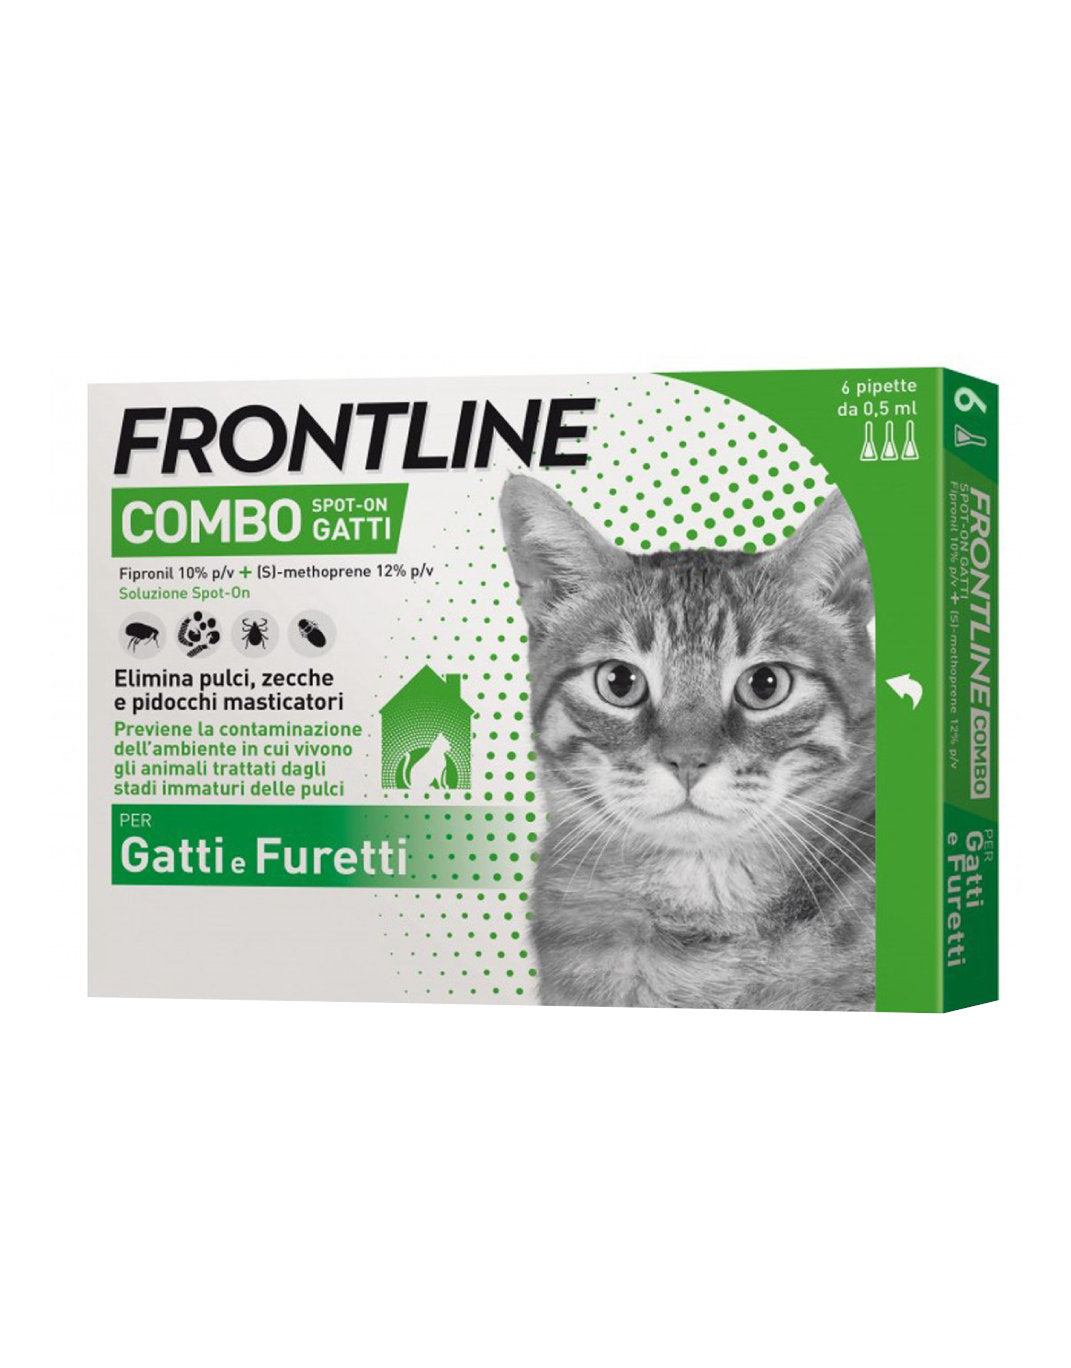 Frontline combo gatti in 6 pipette con una formula avanzata di Fipronil e S-Methoprene per una protezione completa da pulci, zecche e pidocchi